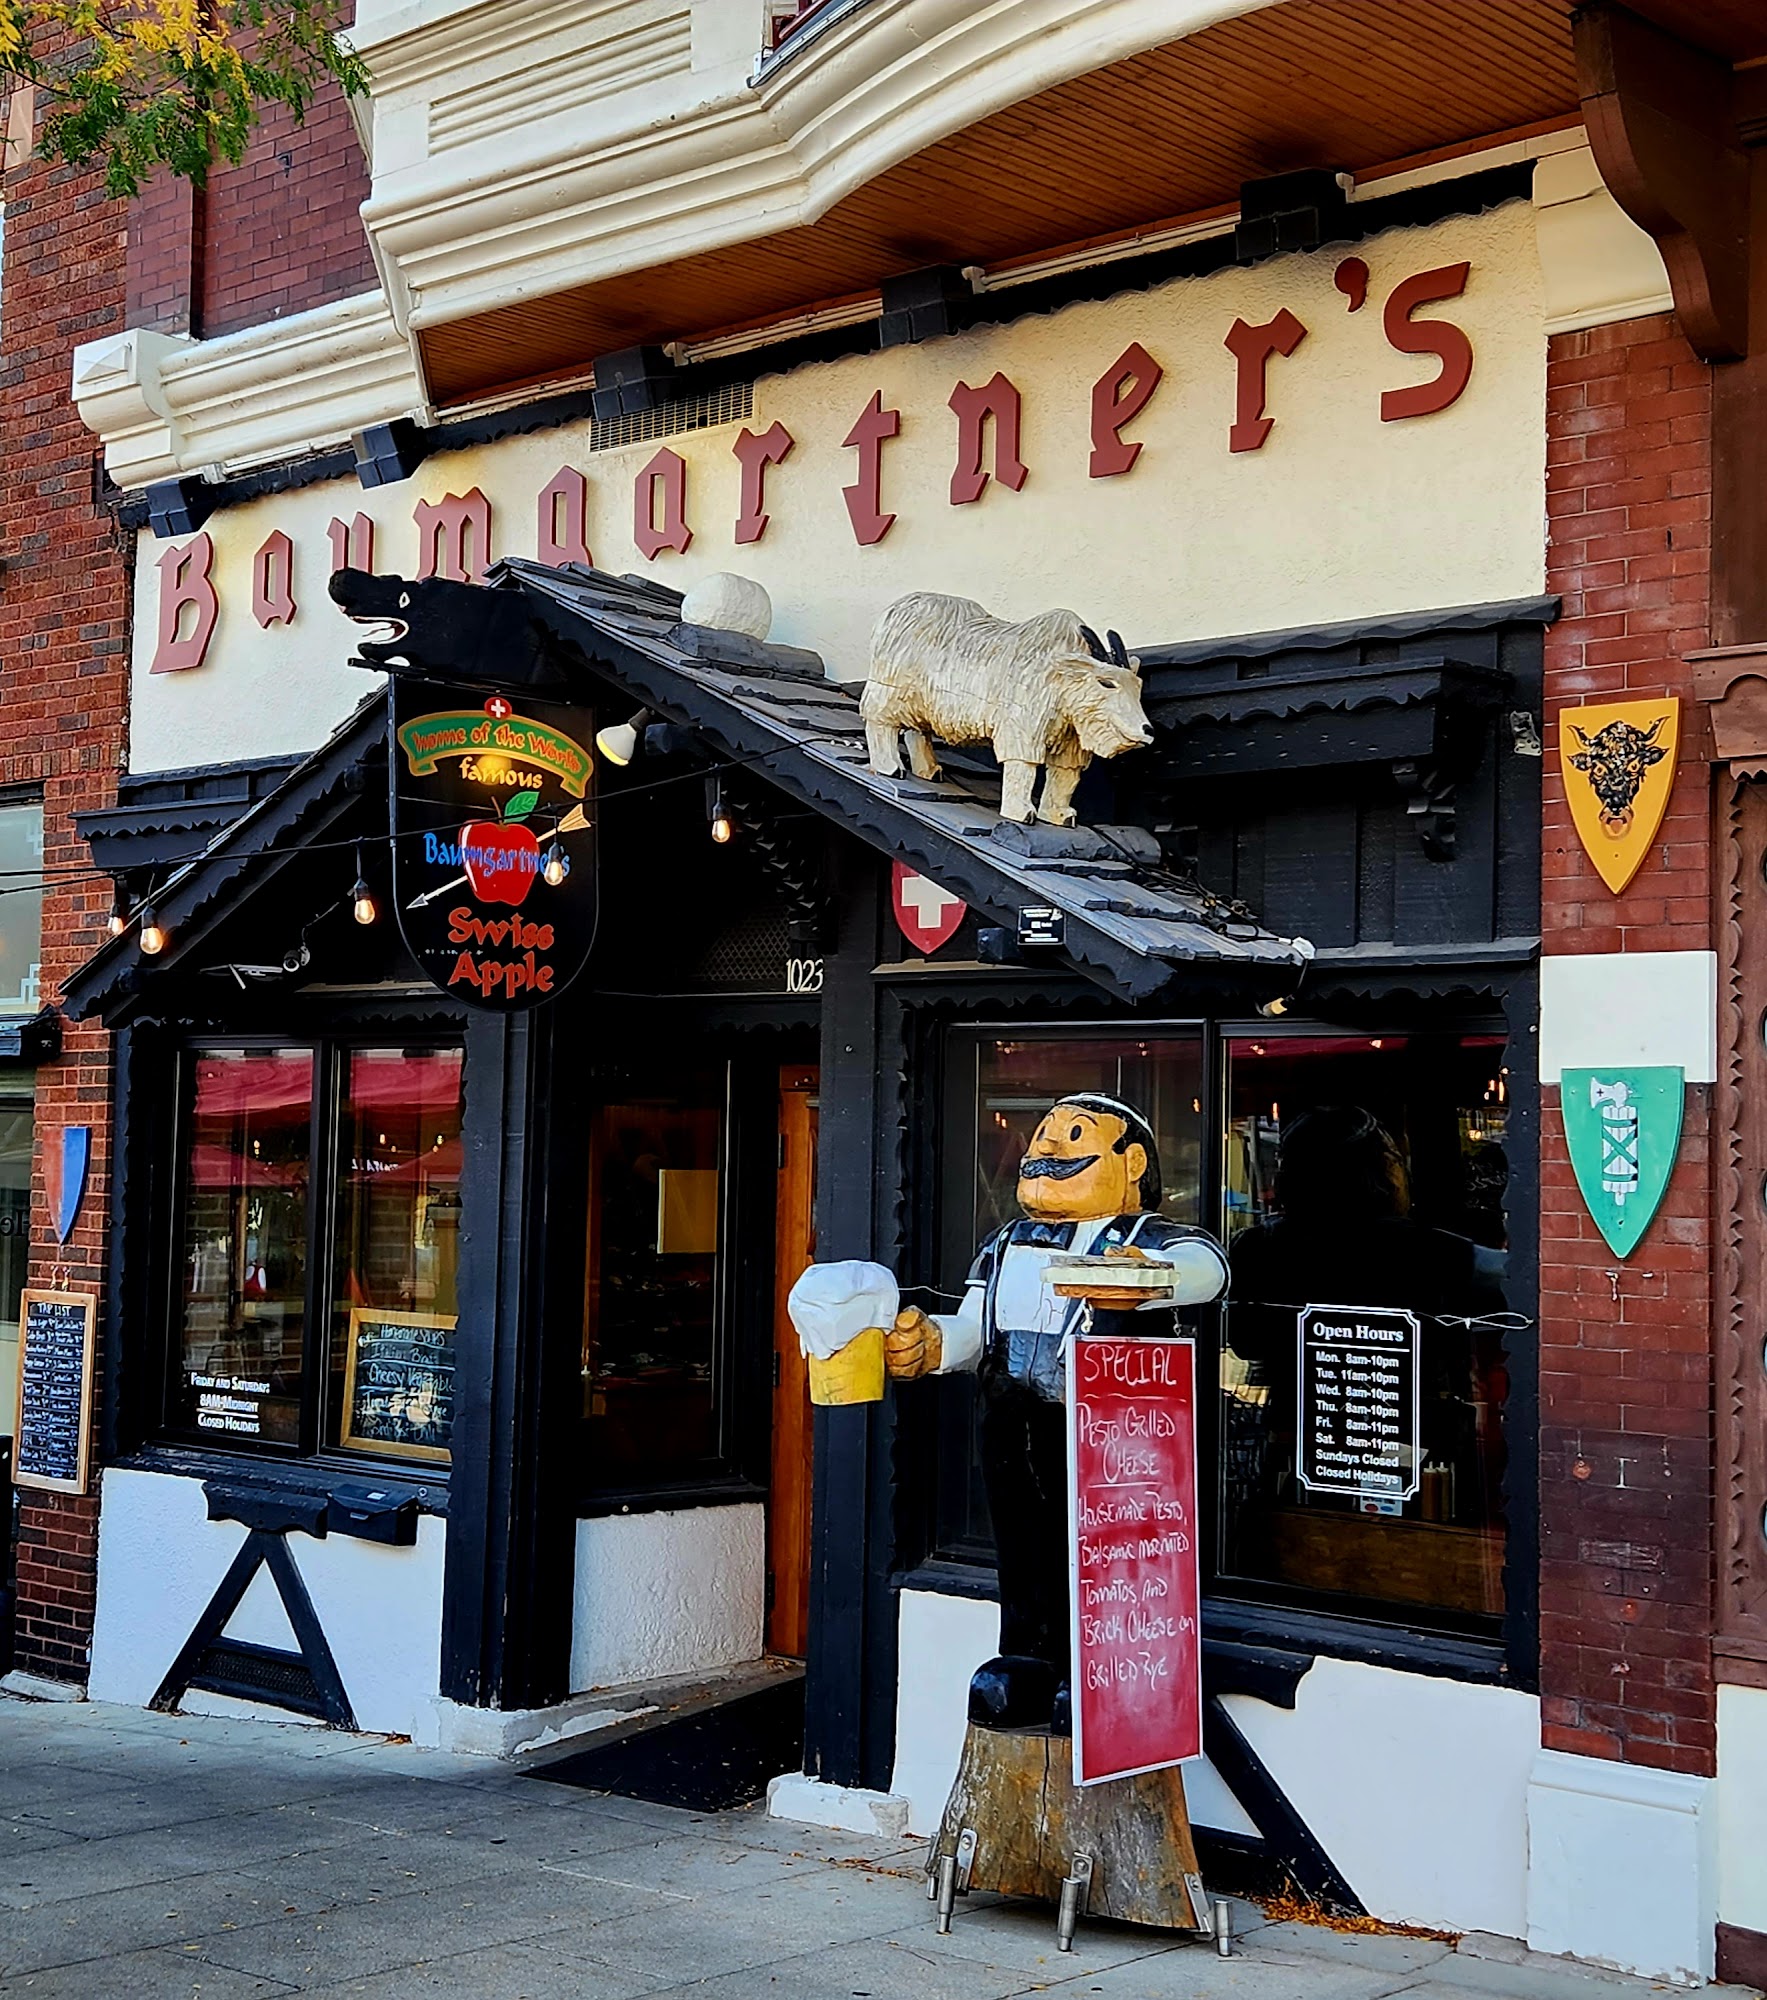 Baumgartner's Cheese Store & Tavern